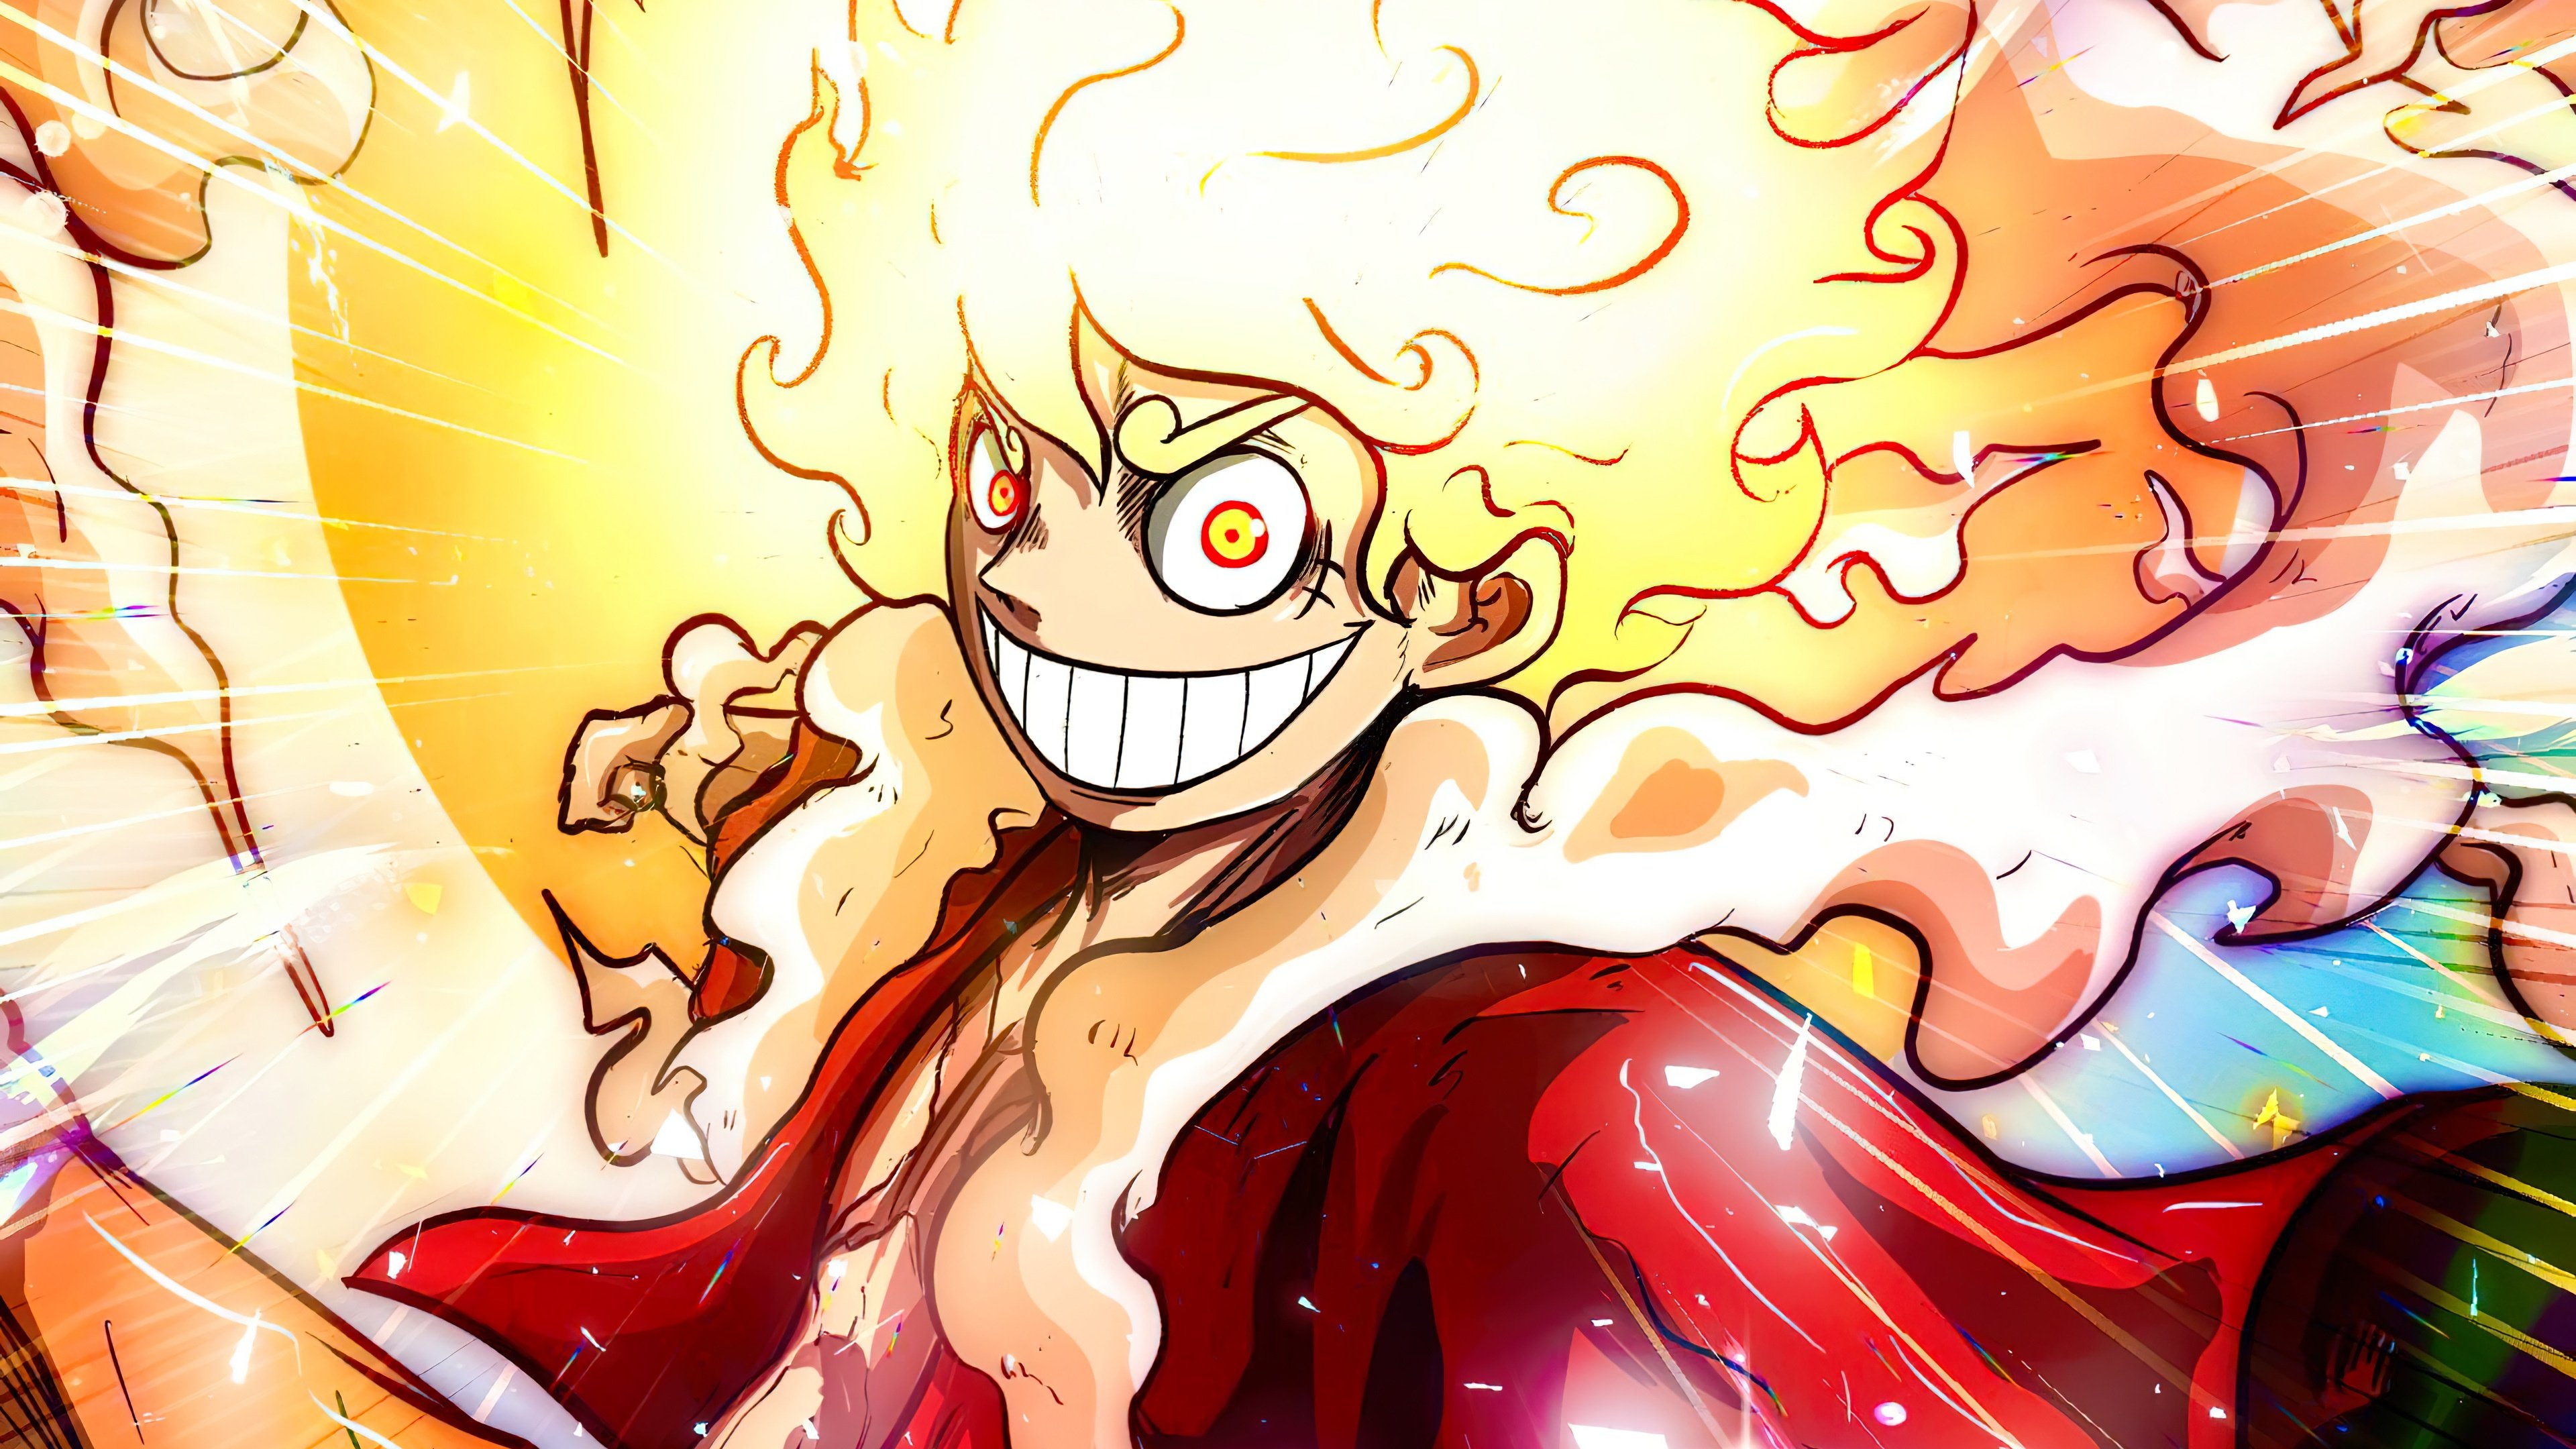 Fondos de pantalla Luffy Gear 5 de One Piece